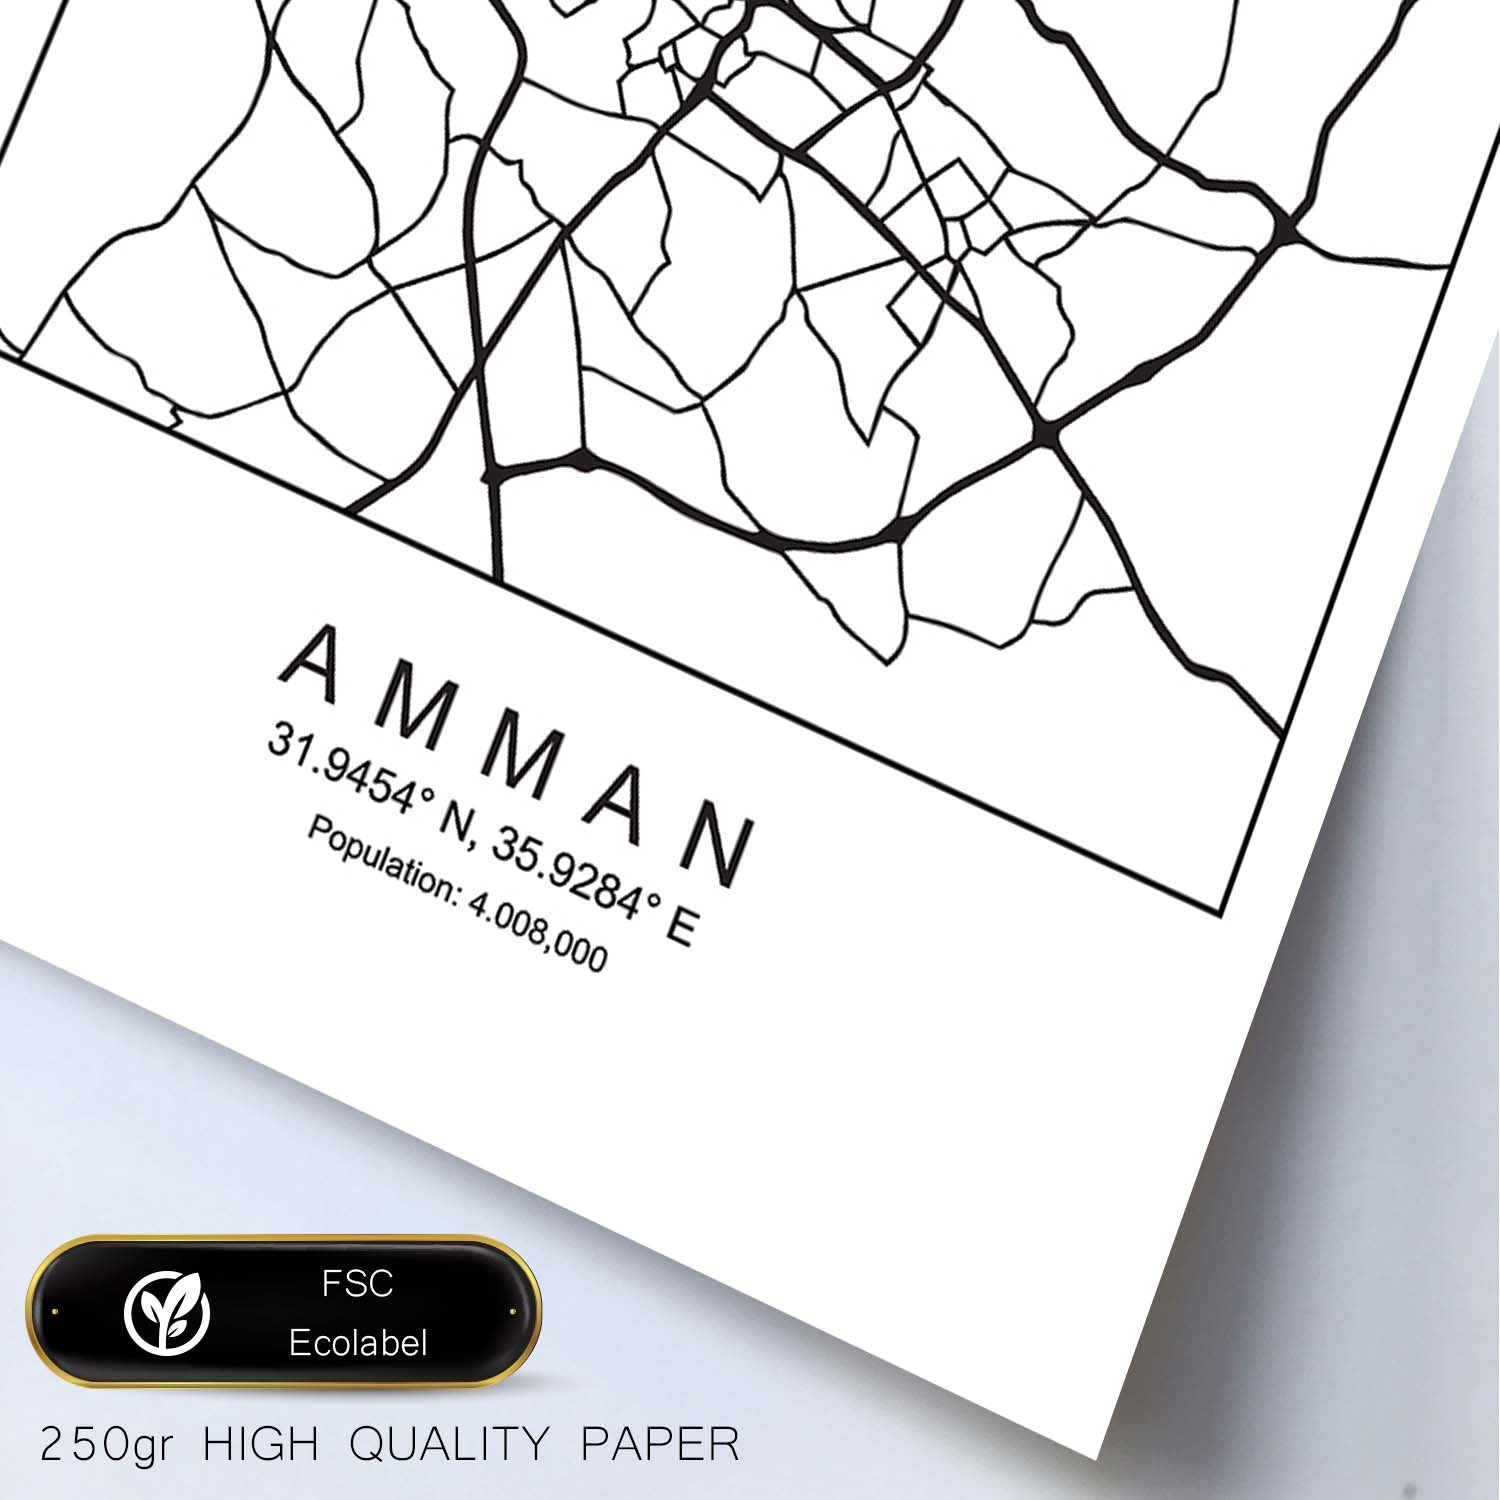 Lámina mapa de la ciudad Amman estilo nordico en blanco y negro.-Artwork-Nacnic-Nacnic Estudio SL